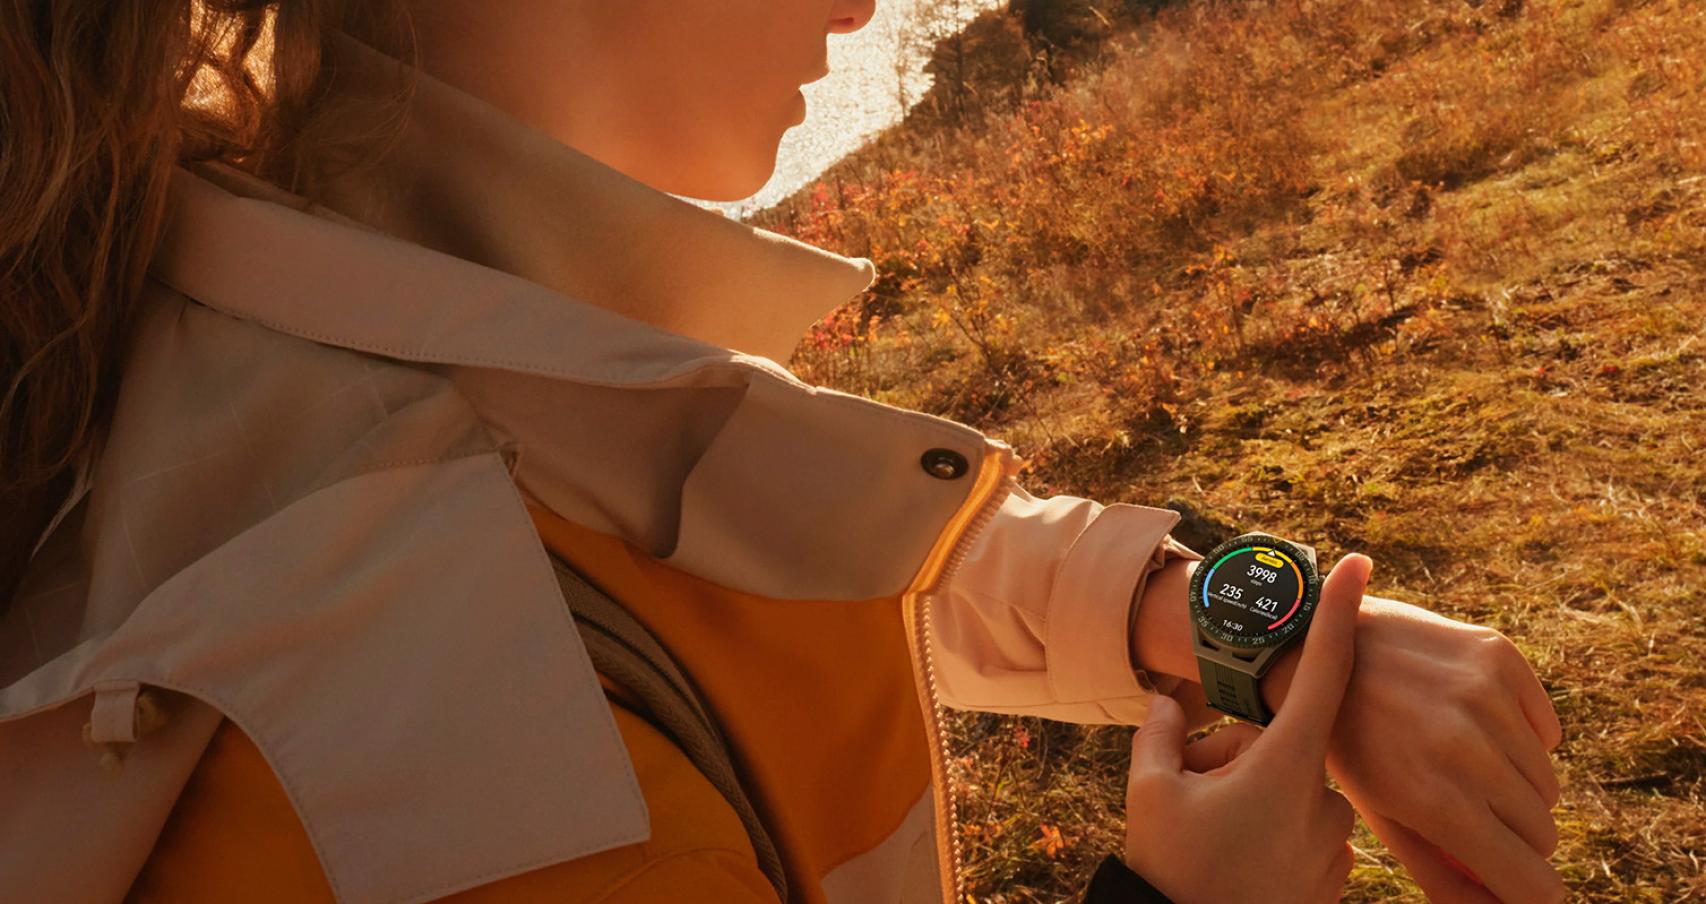 Los mejores smartwatches con lector ECG para electrocardiogramas